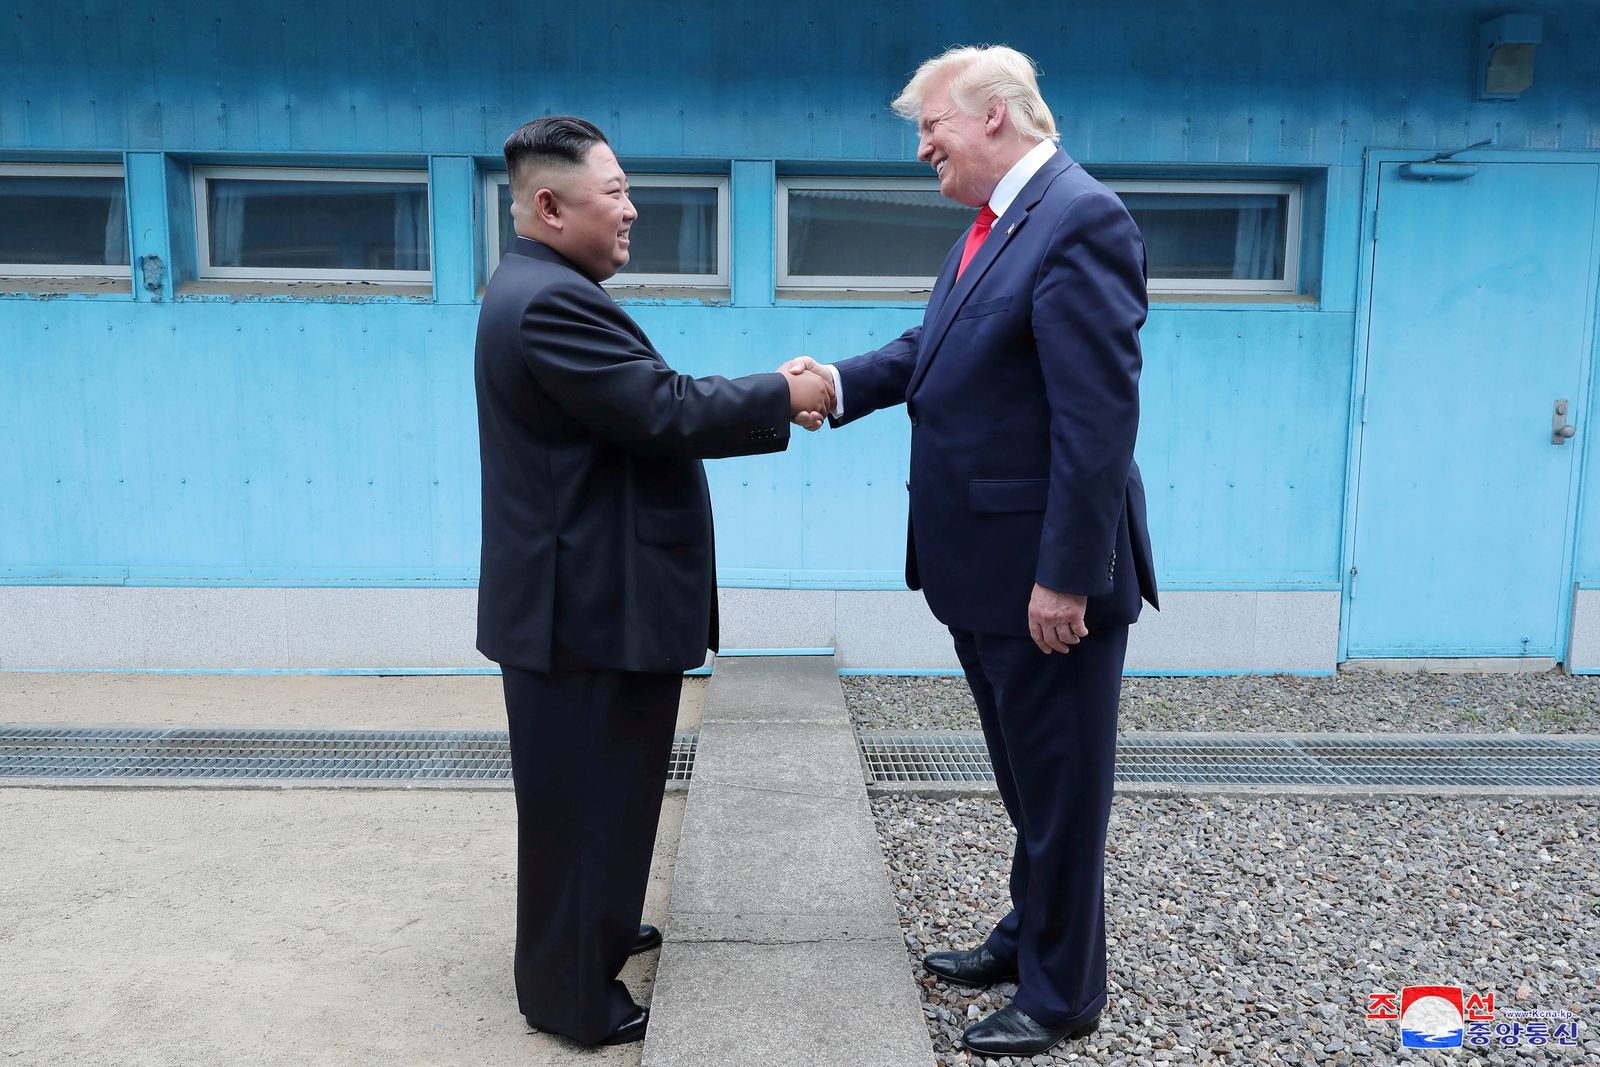 الرئيس الأميركي السابق دونالد ترمب يلتقي بالزعيم الكوري الشمالي كيم جونج في المنطقة الأمنية المشتركة بالقرب من الحدود شديدة التحصين بين الكوريتين - 30 يونيو 2019 - REUTERS